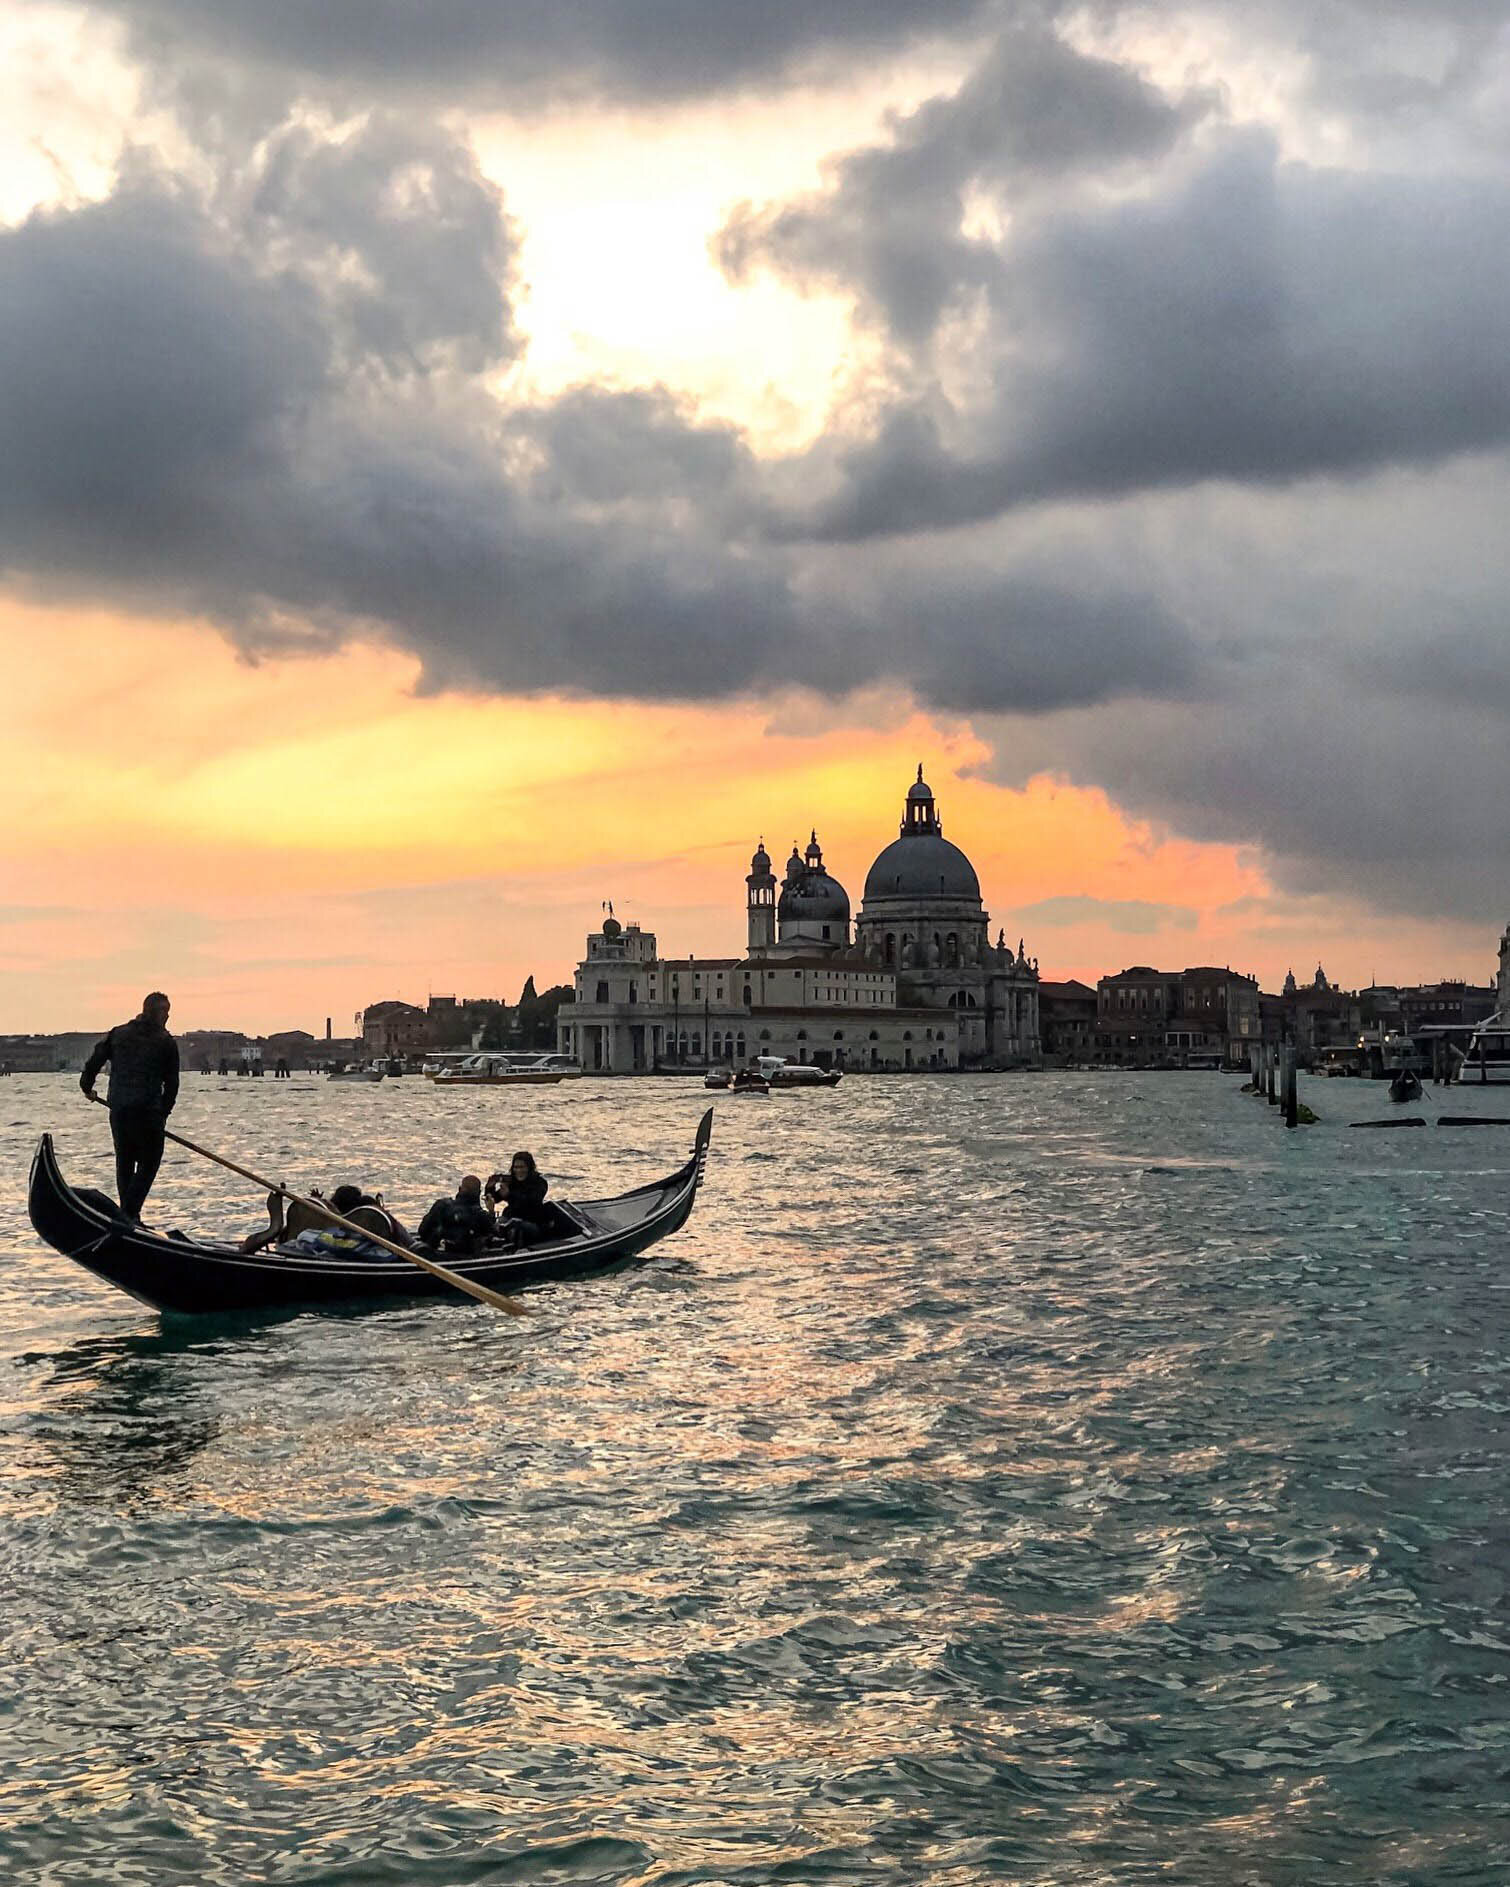 Gondola at sunset, Venice Italy